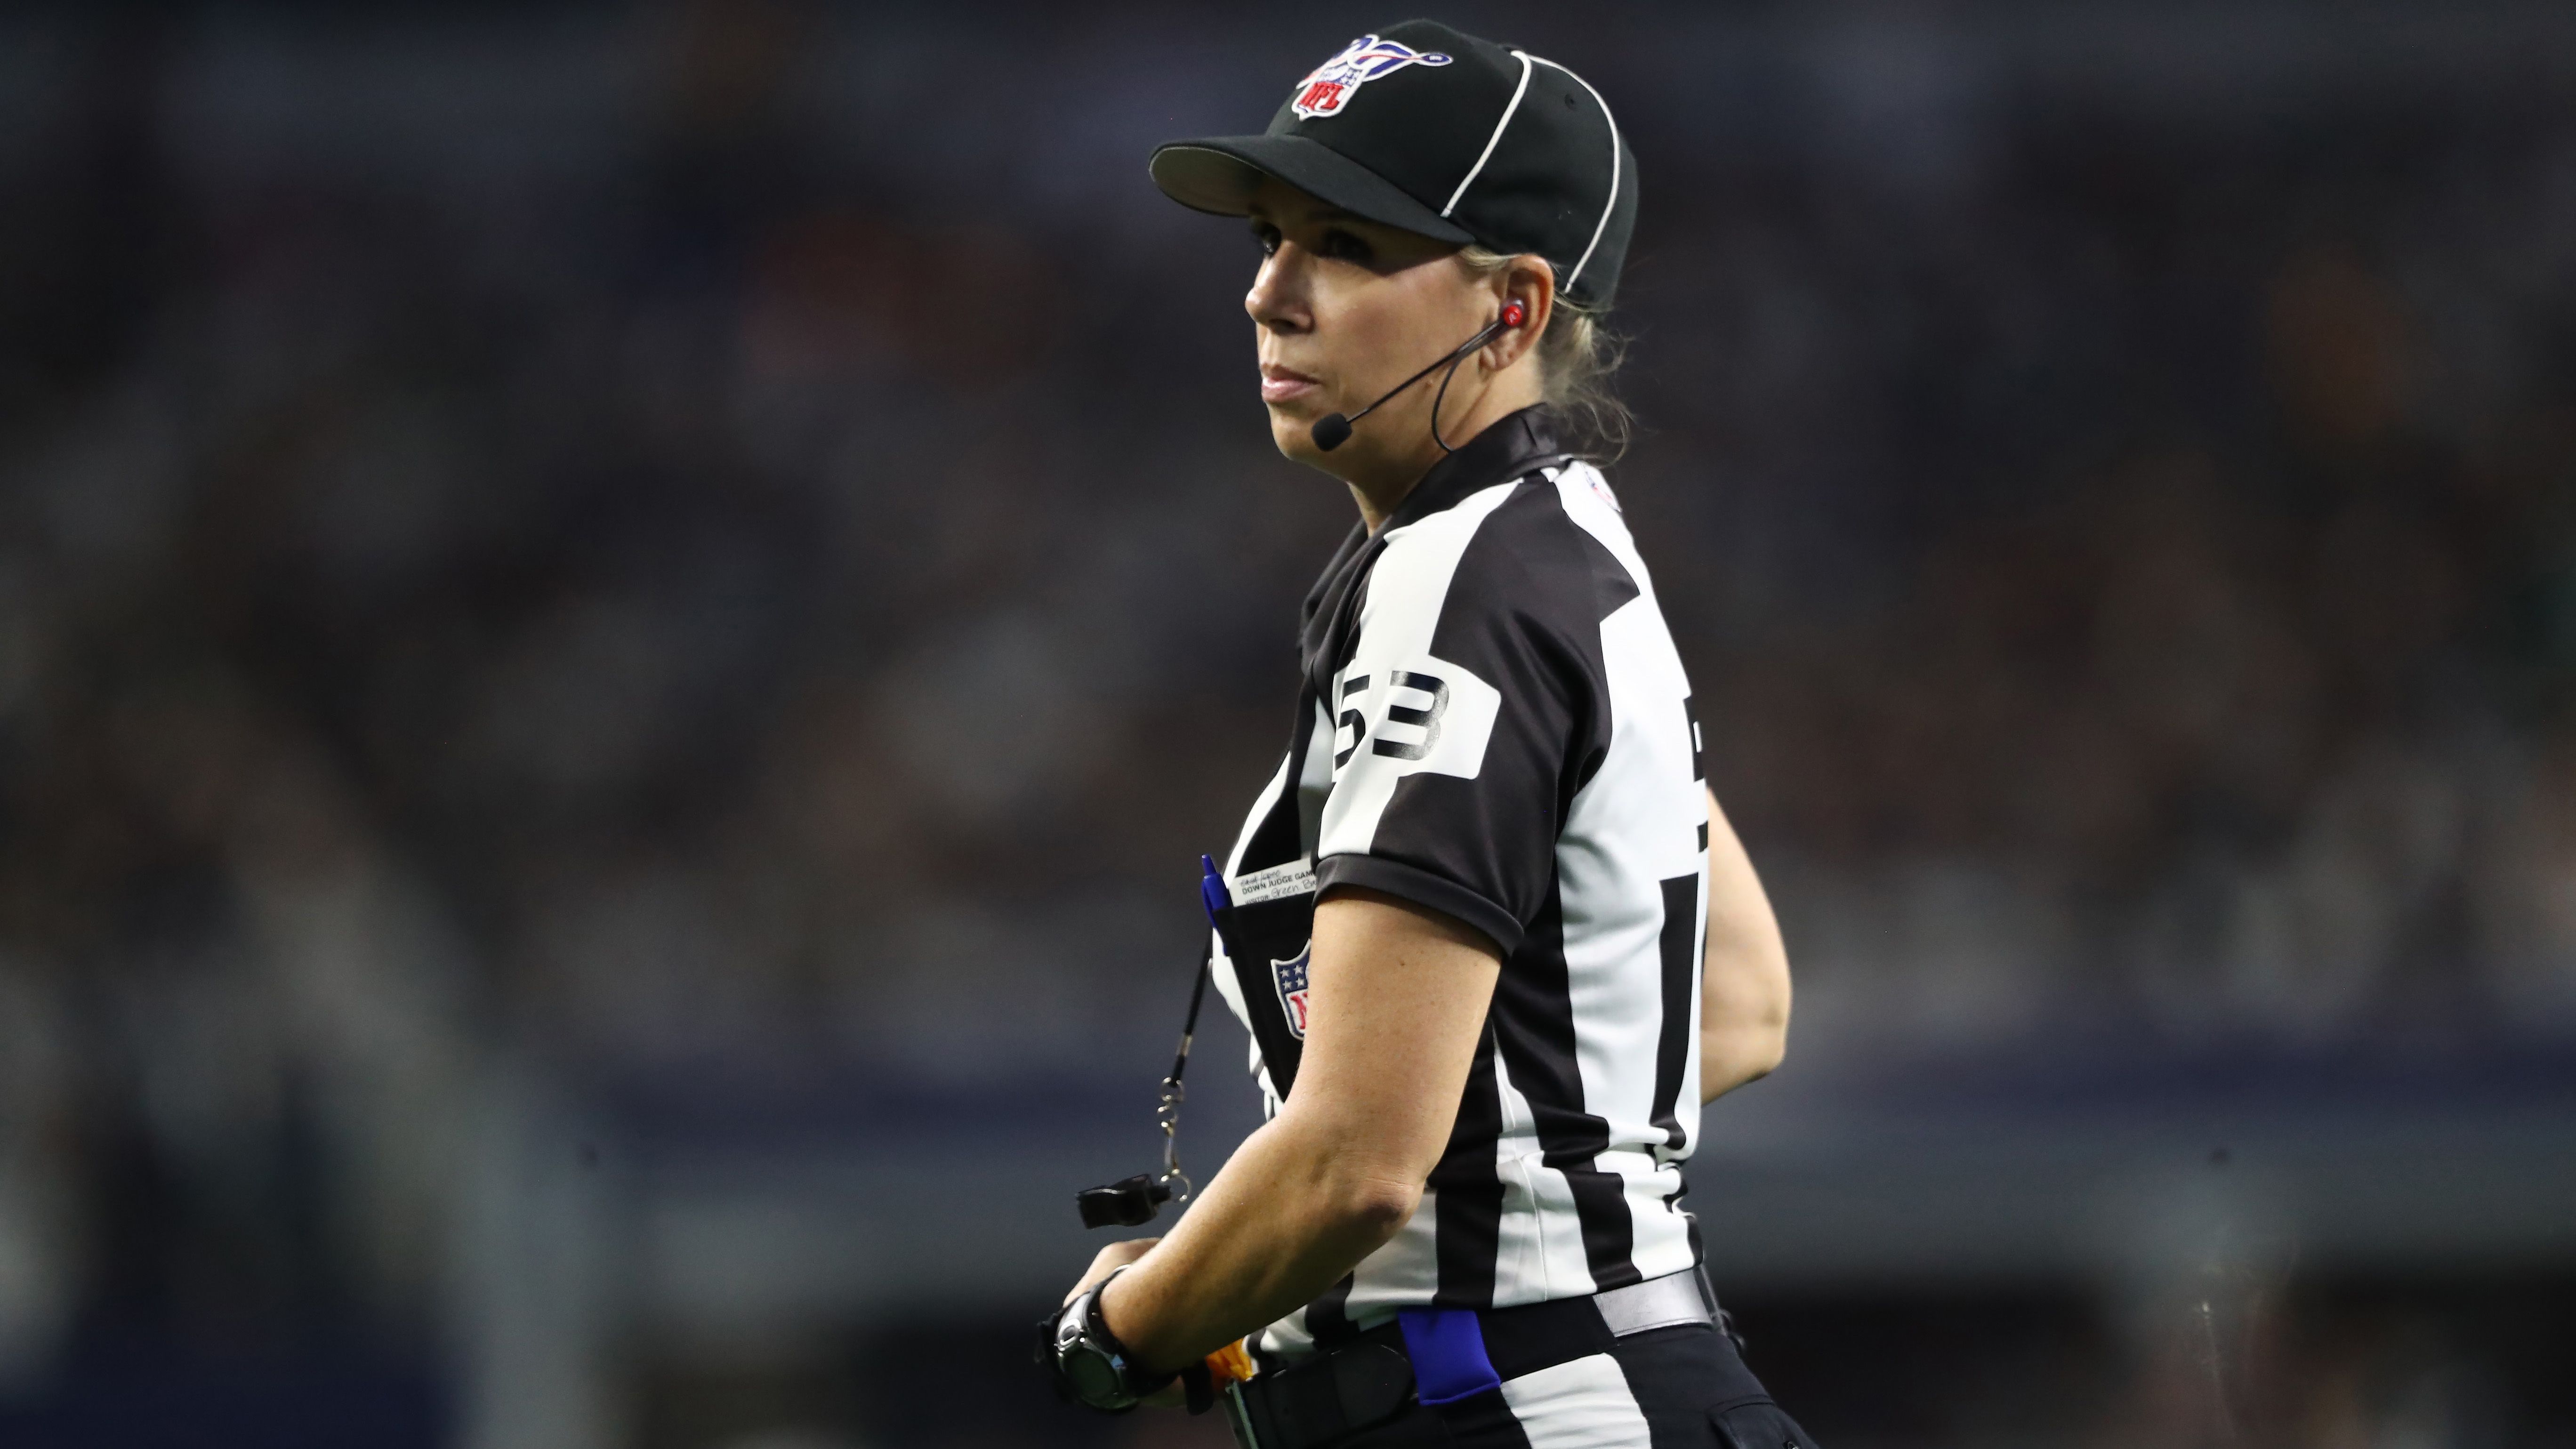 
                <strong>Sarah Thomas wird die erste weibliche Schiedsrichterin in einem Super Bowl</strong><br>
                Premiere bei den Schiedsrichtern: In Sarah Thomas wird erstmals in der NFL-Geschichte ein weiblicher Referee am Super Bowl teilnehmen. Die 47-Jährige wird als "Down Judge" eingesetzt und steht auf Höhe der Line of Scrimmage. Es ist bereits ihre sechste Saison in der NFL. 
              